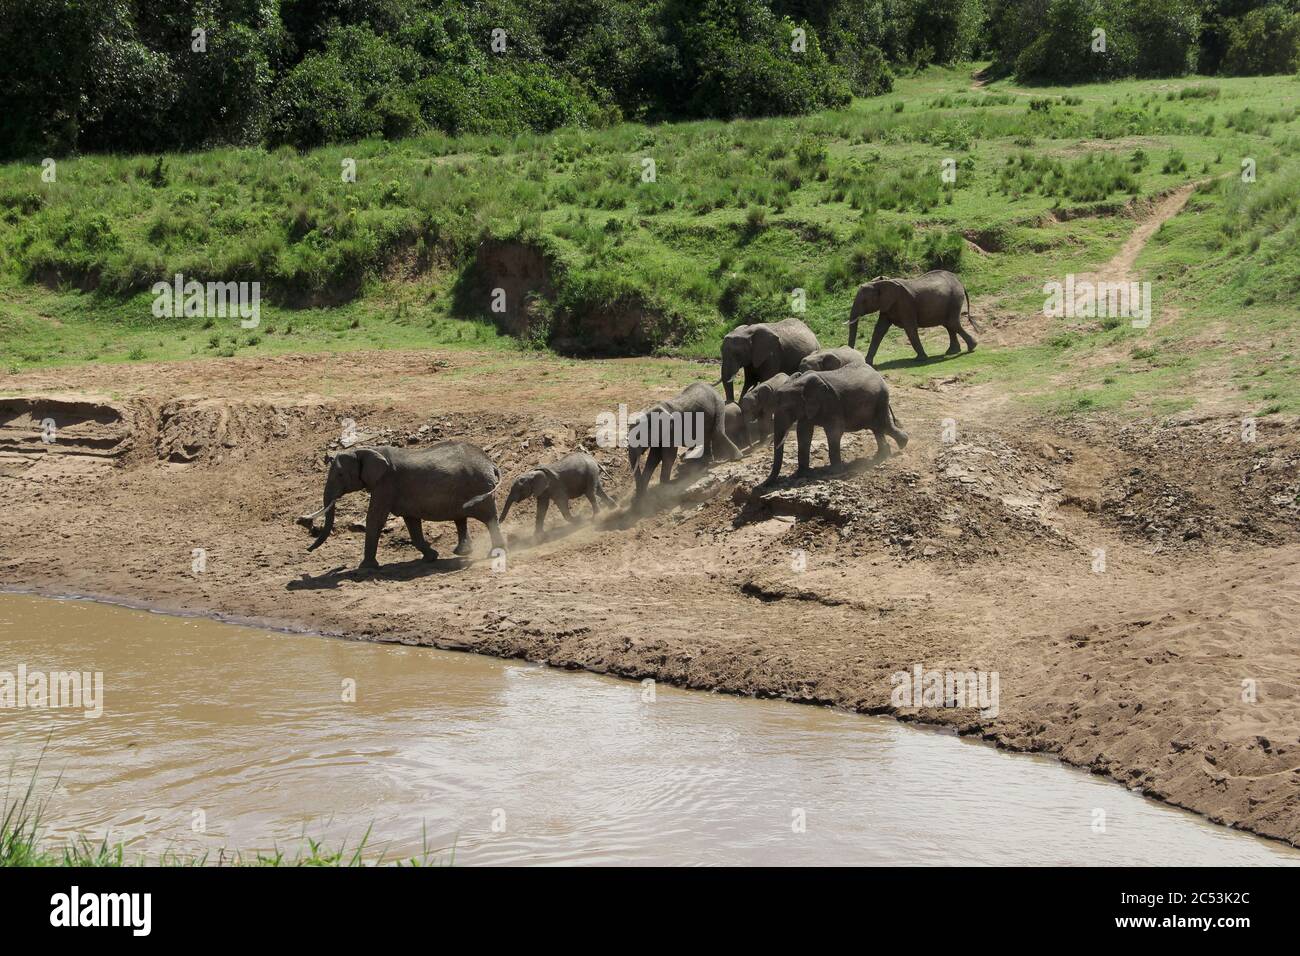 Eine Elefantenherde am gegenüberliegenden, staubigen Flussufer des Mara River an einem Kreuzungspunkt bewegt sich zum Wasser hin und will den Fluss überqueren Stockfoto